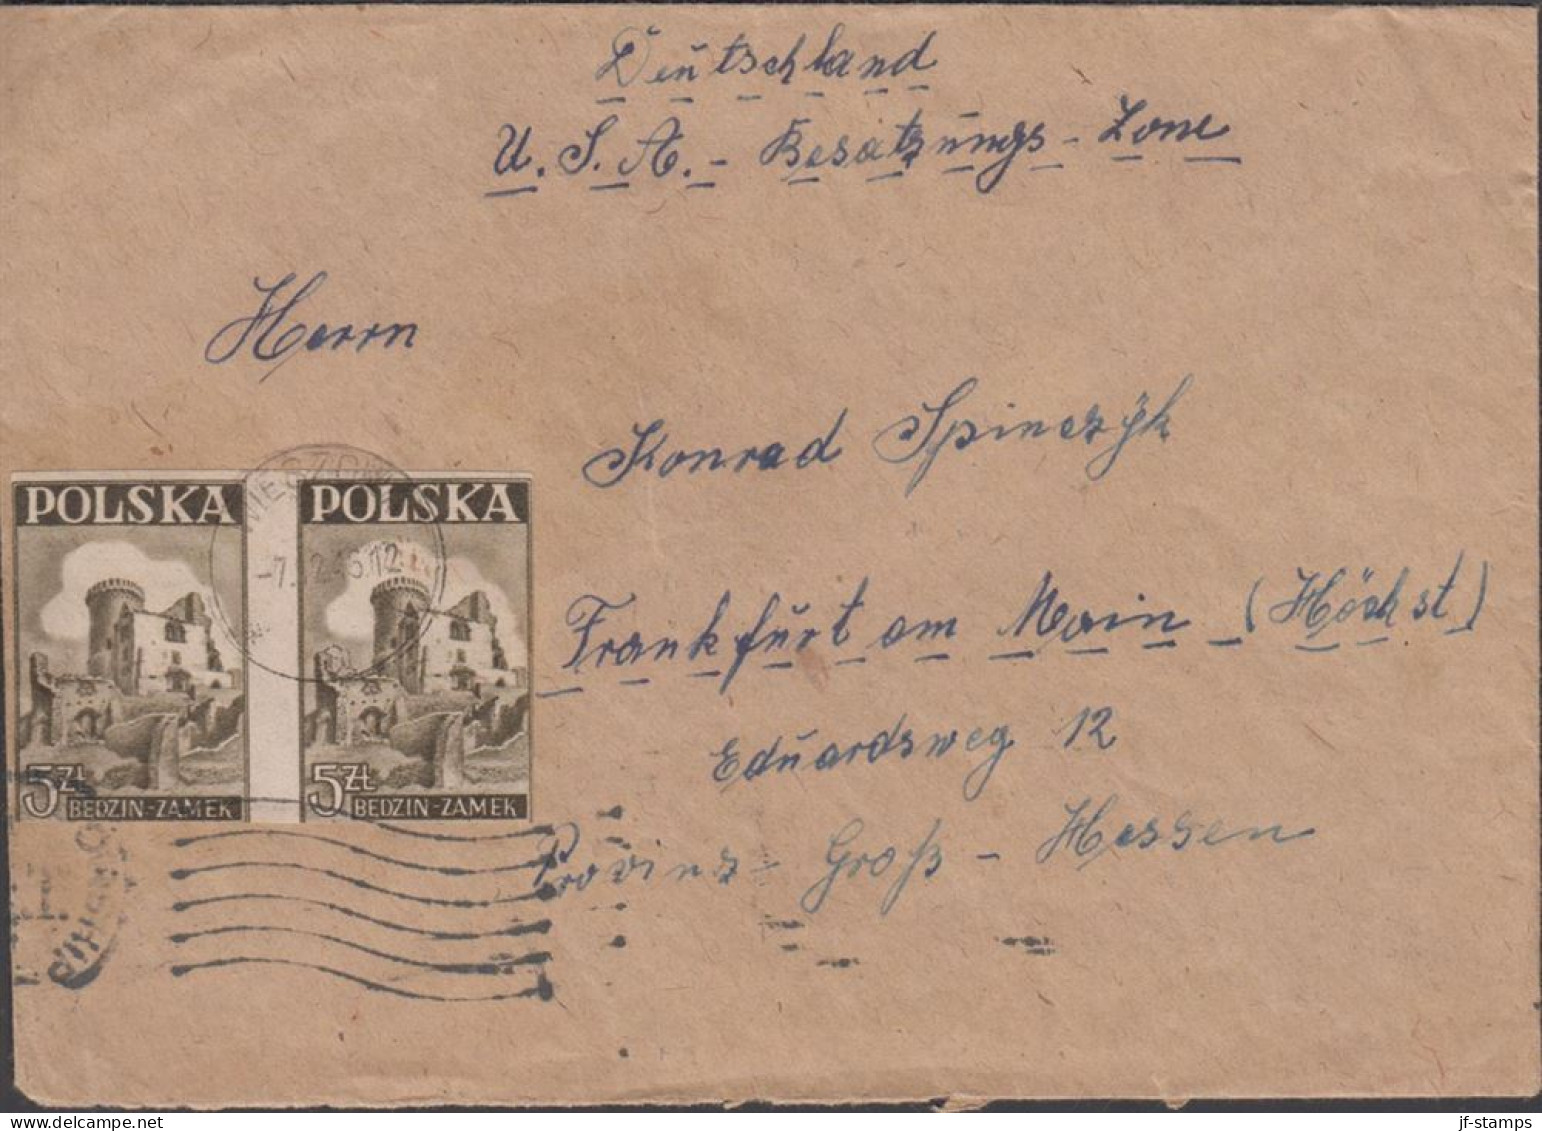 1946. POLSKA. 5 Zl. BEDZIN-ZAMEK In Pair On Cover To Frankfurt A. Main USA Occ. Zone In Germa... (Michel 441) - JF438544 - Government In Exile In London